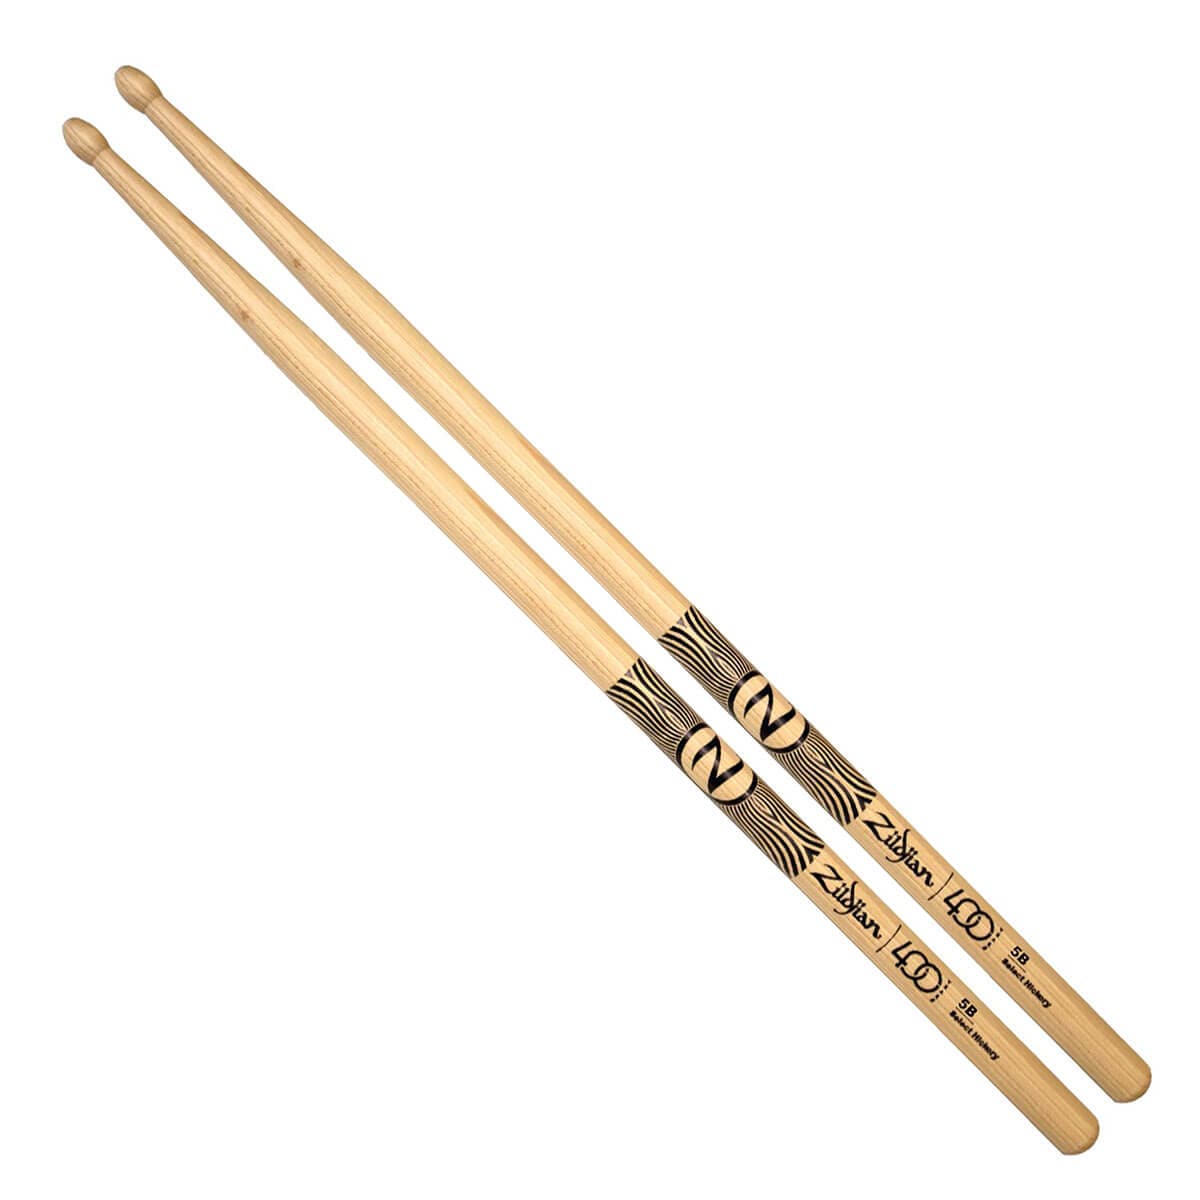 Zildjian - 5b Drumsticks - Limited Edition 400th Anniversary